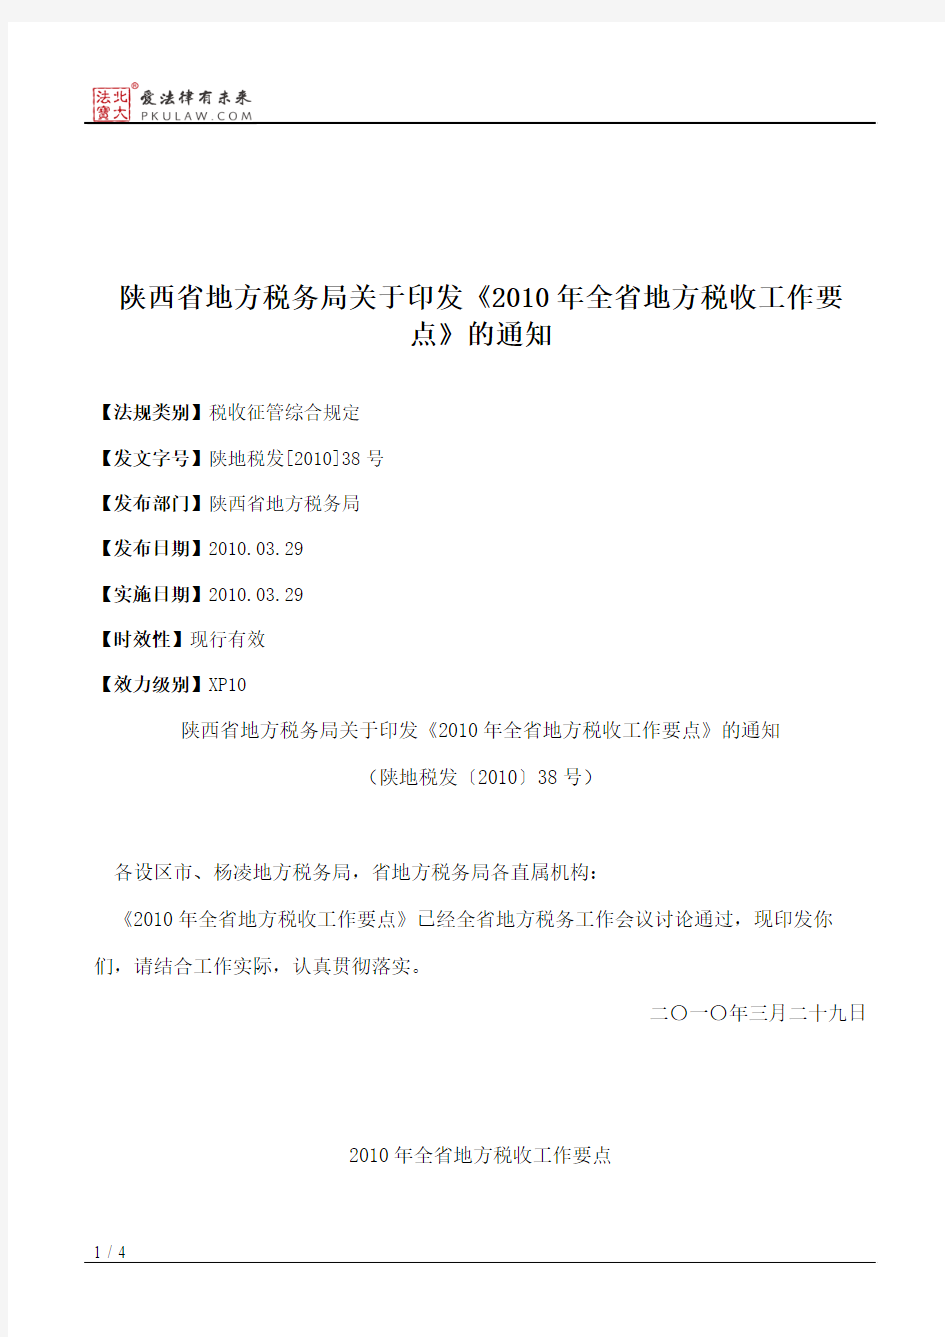 陕西省地方税务局关于印发《2010年全省地方税收工作要点》的通知